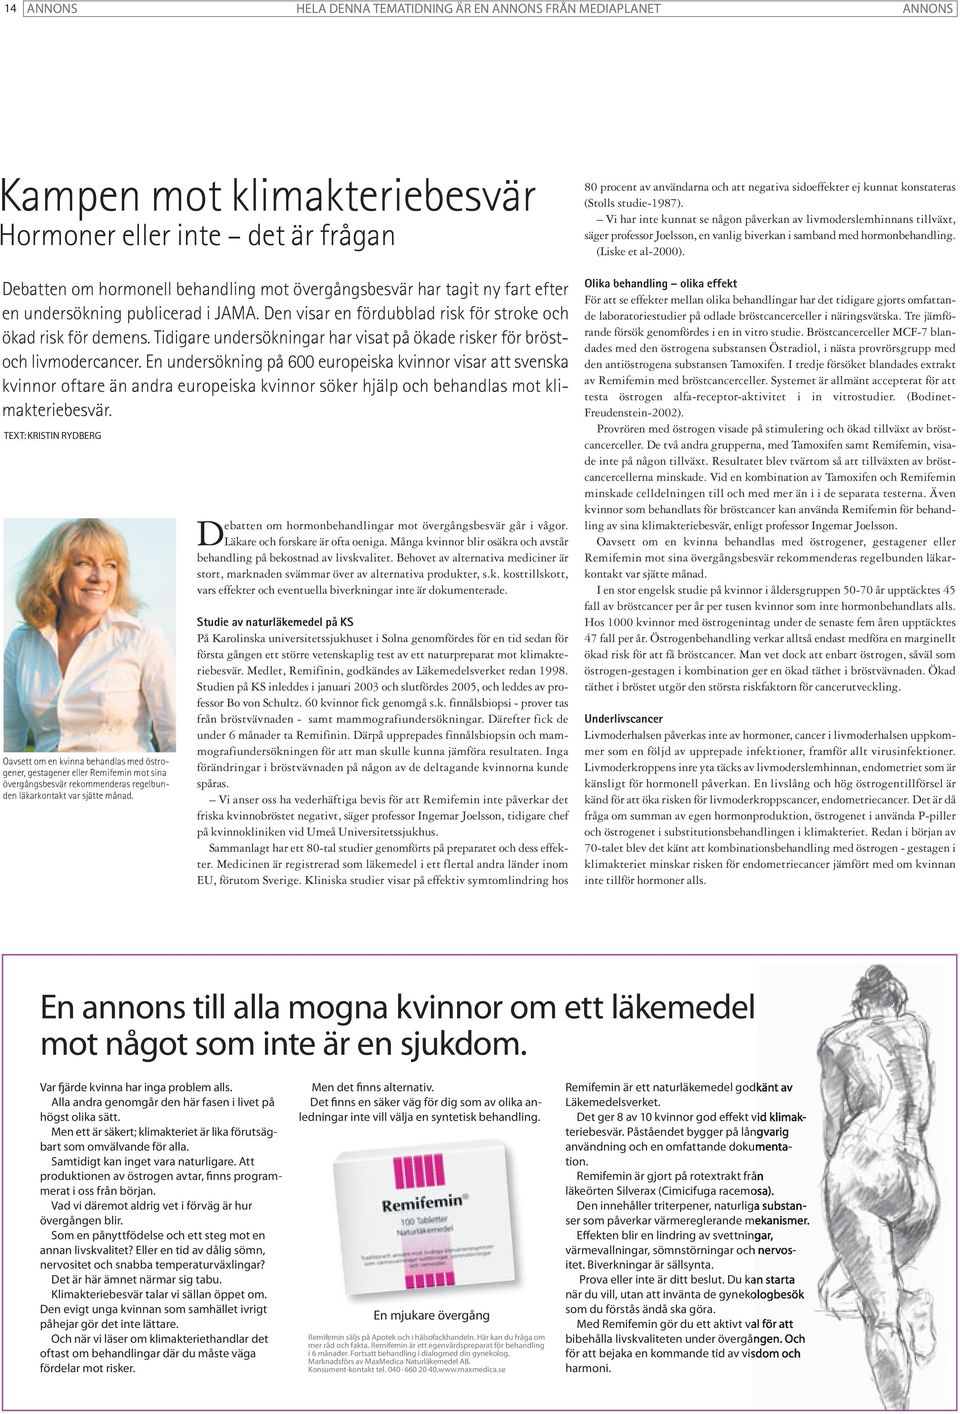 En undersökning på 600 europeiska kvinnor visar att svenska kvinnor oftare än andra europeiska kvinnor söker hjälp och behandlas mot klimakteriebesvär.